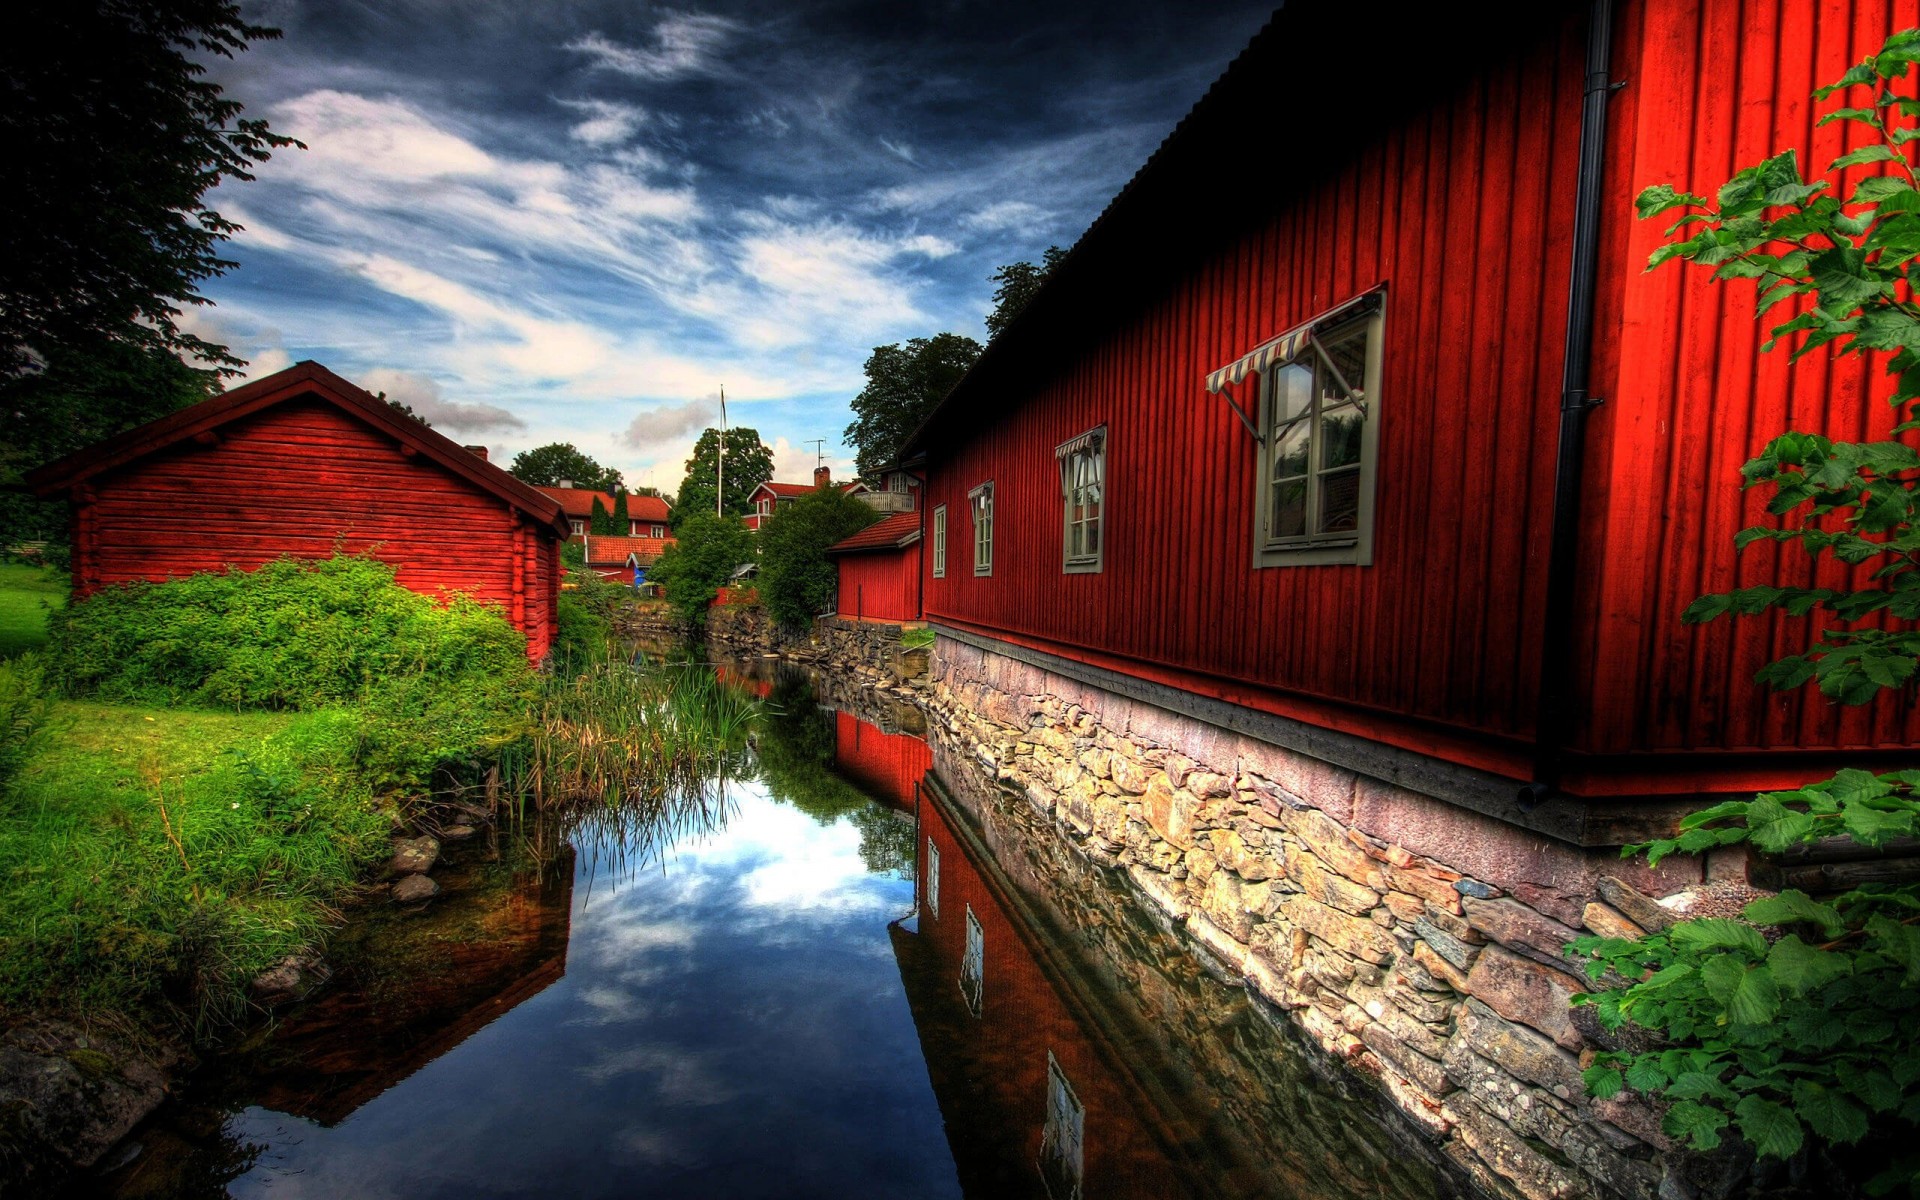 Red Village, Norberg, Sweden Wallpaper for Desktop 1920x1200